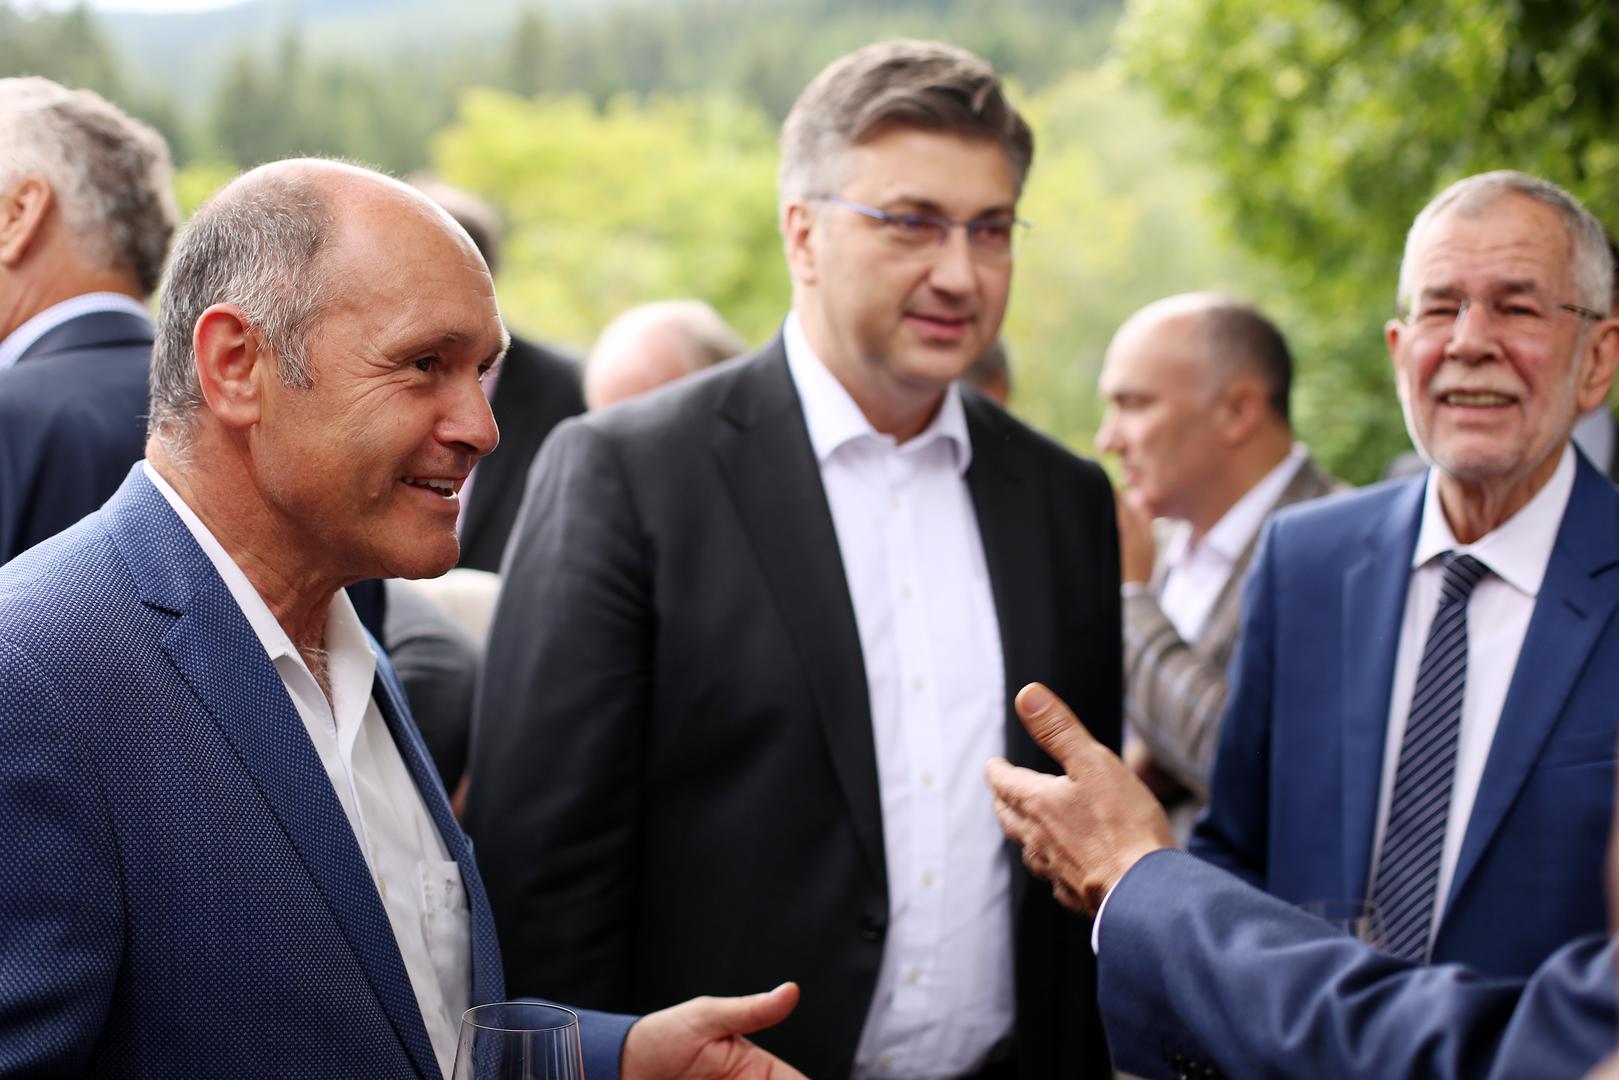 Plenković se susreo i sa šefom austrijskog parlamenta Sobotkom (lijevo)